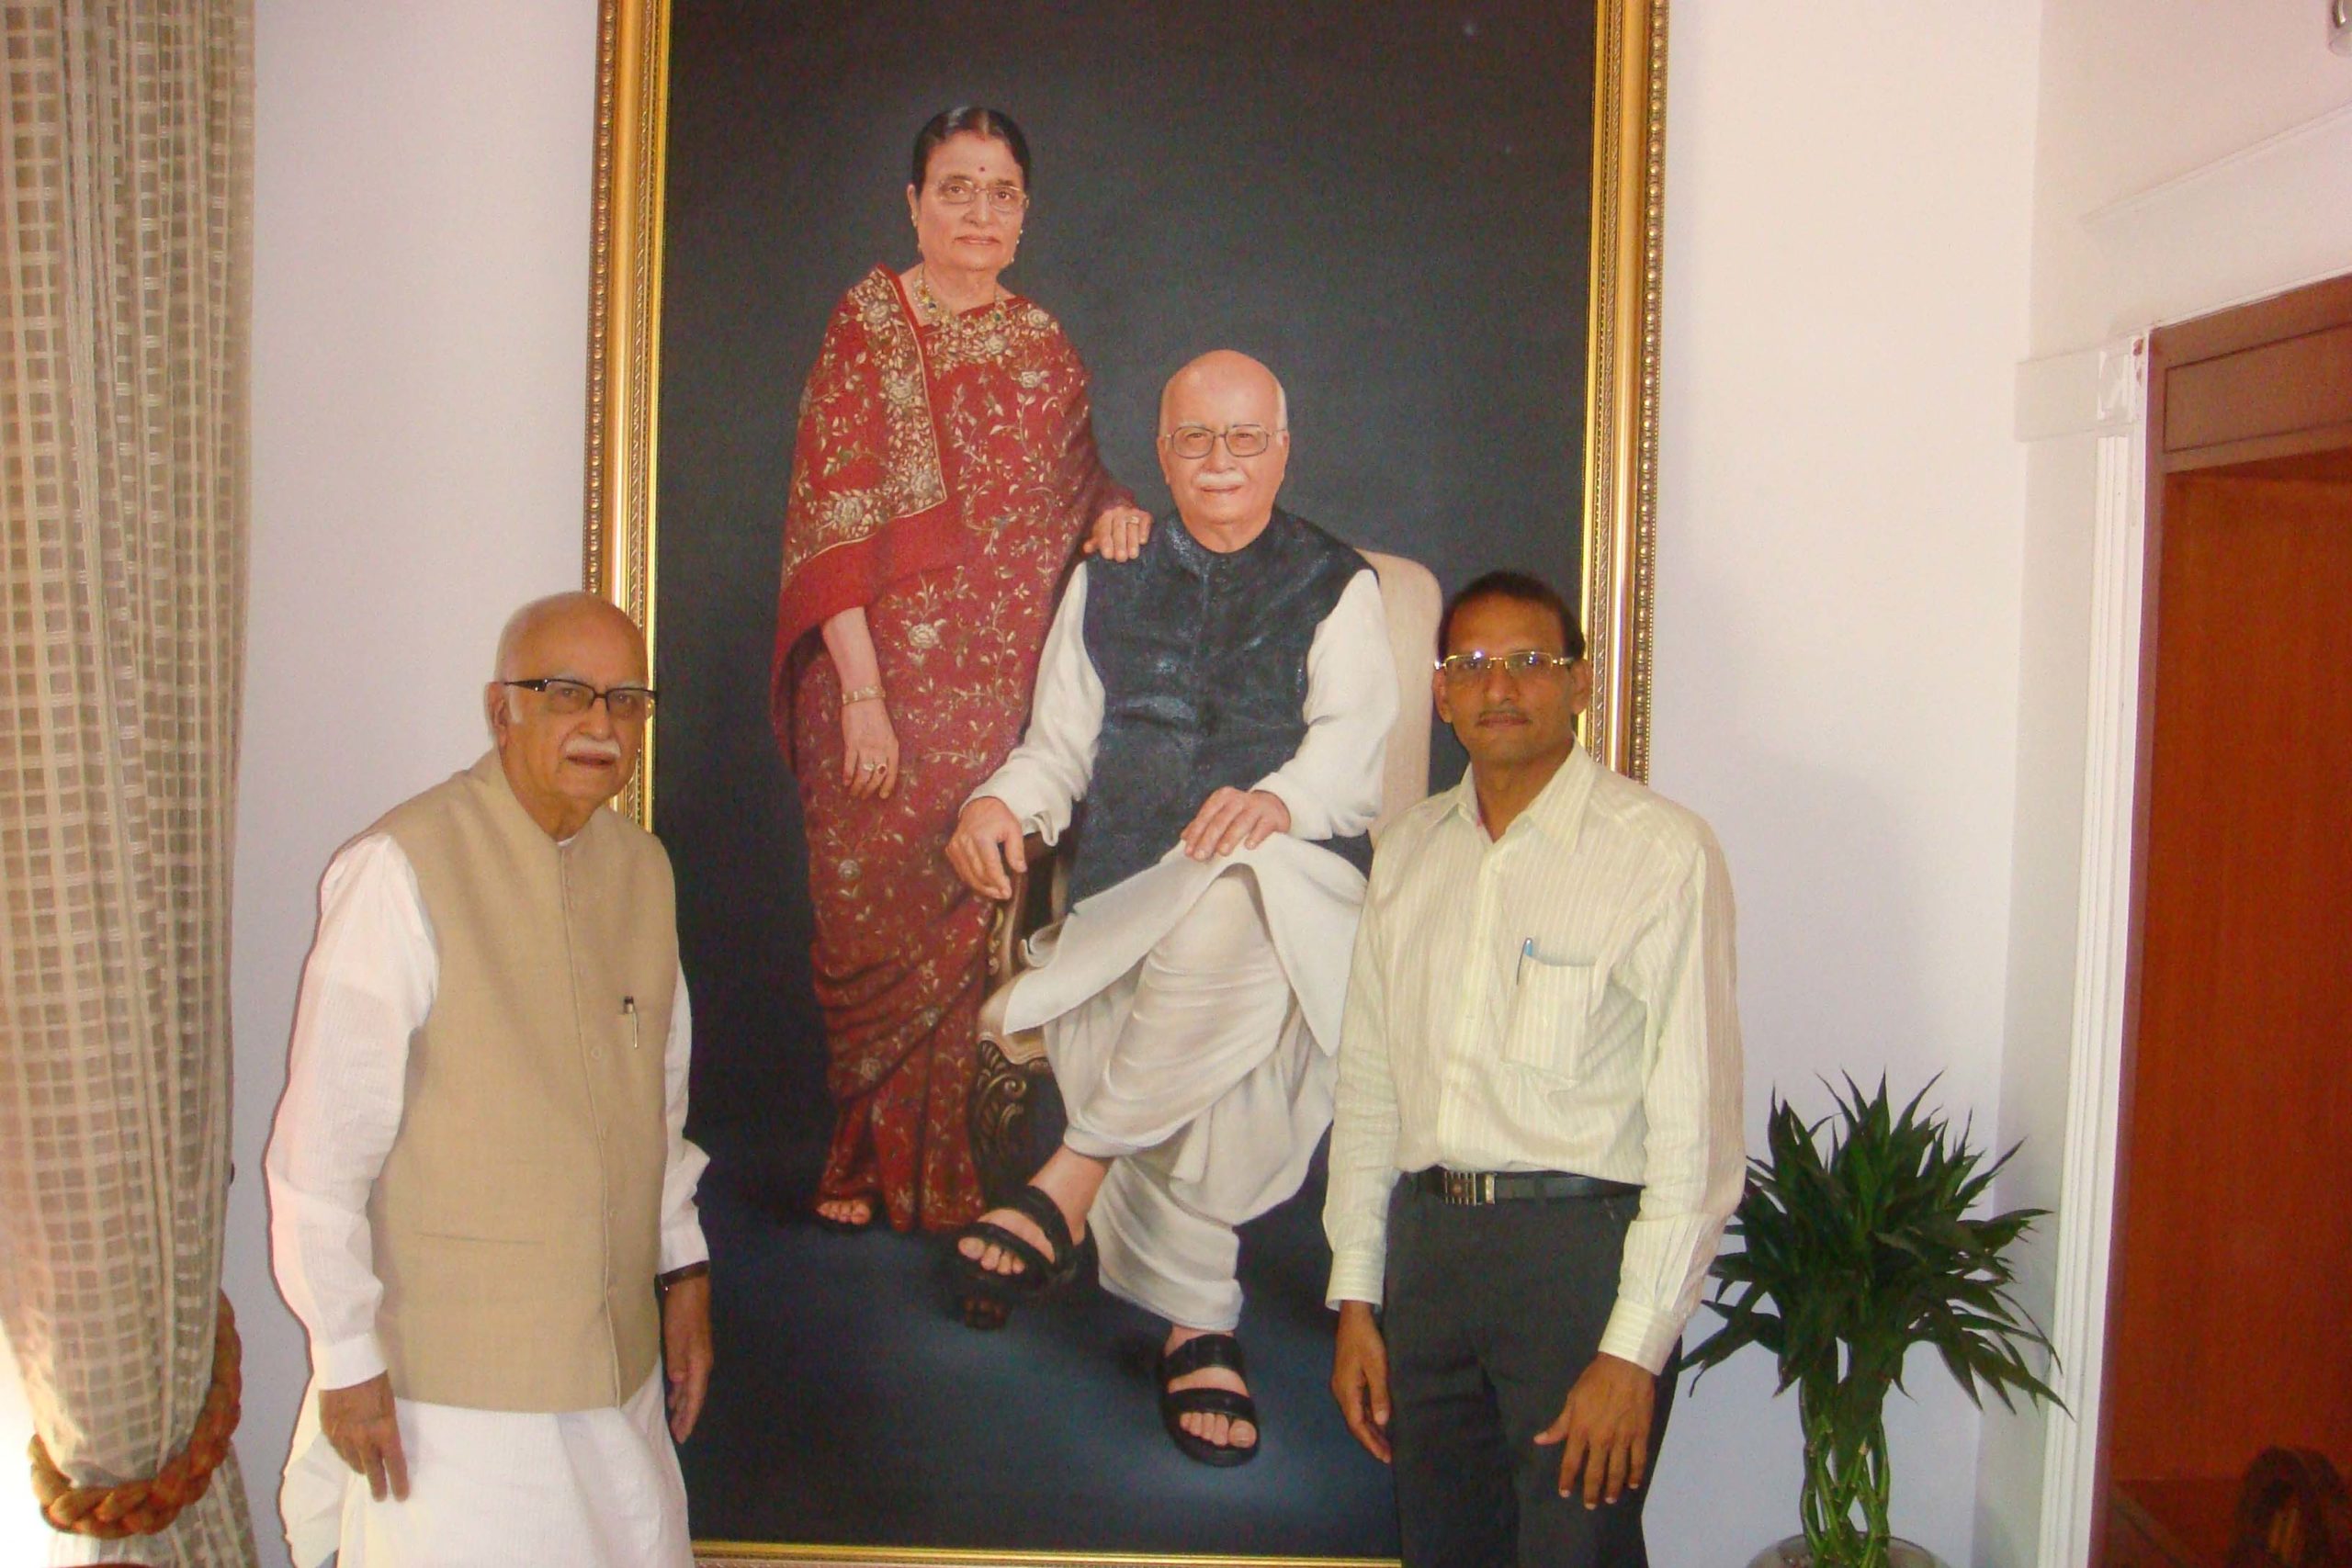 With Hon’ble Shri L. K. Advani Ji – Former Deputy Prime Minister of India